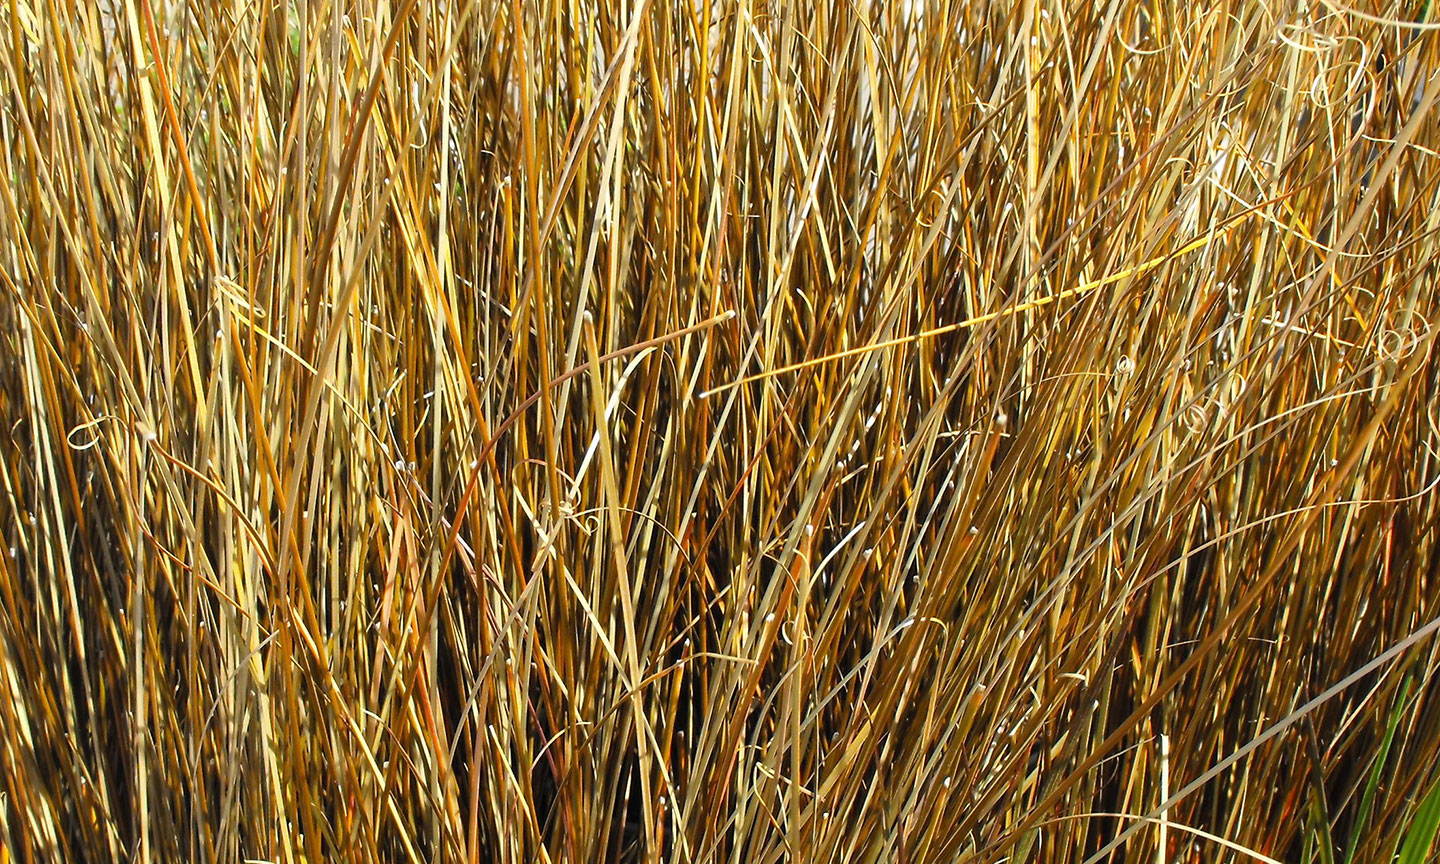 Leatherleaf Sedge Grass